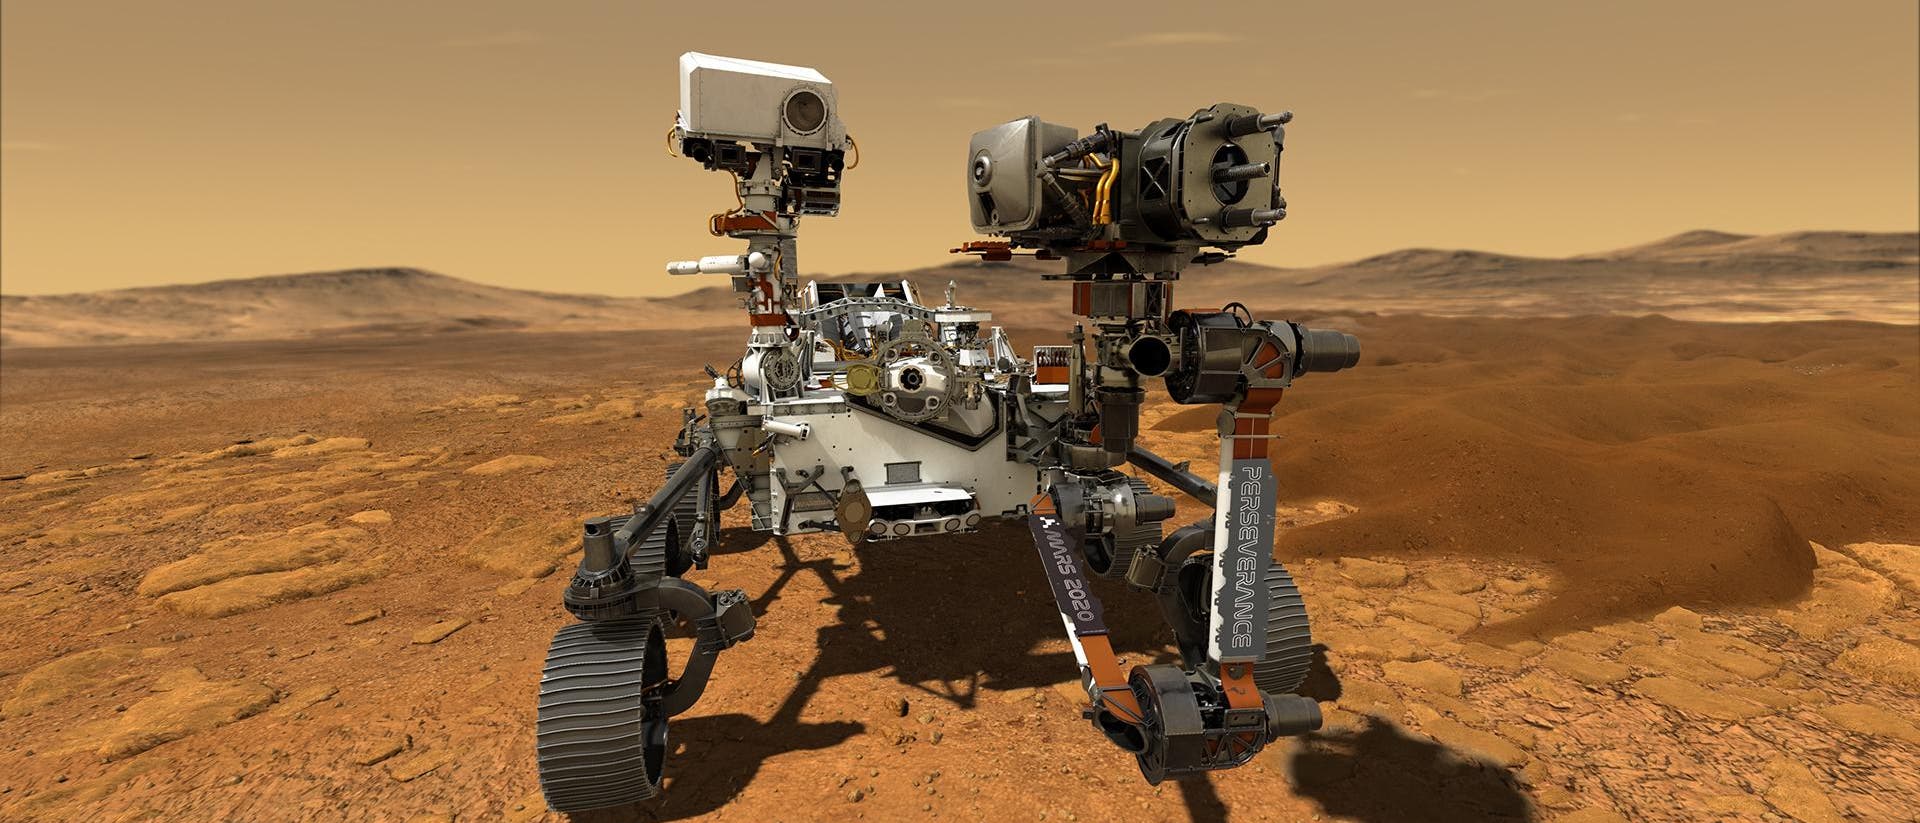 Künstlerische Darstellung des Rovers Perseverance auf dem Mars. Ein Robotergefährt in rötlicher Wüste unter orangefarbenem Himmel.